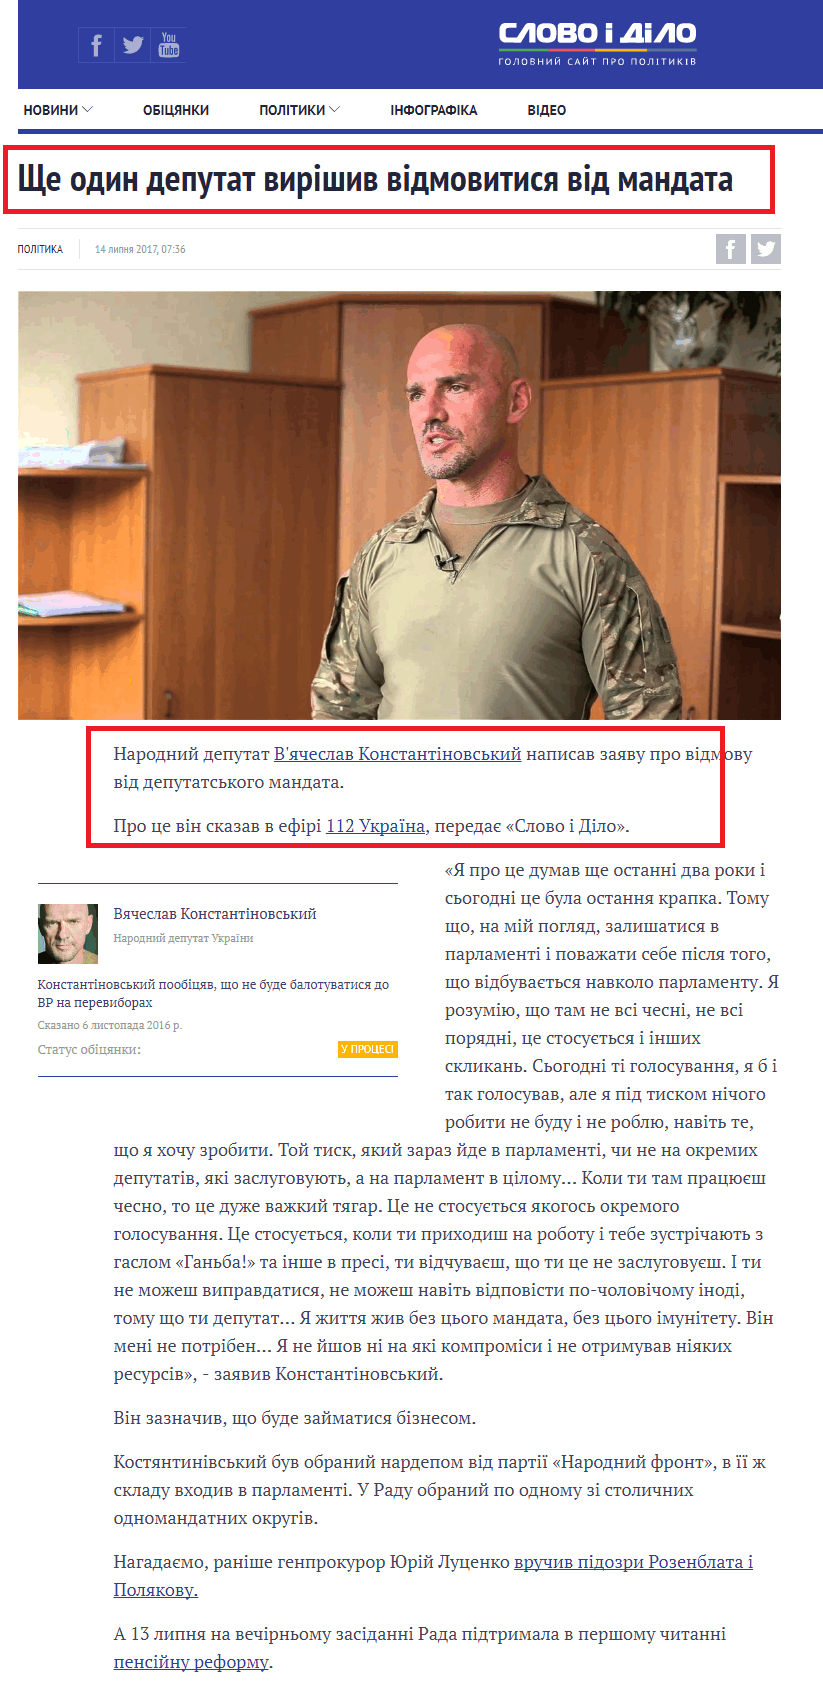 https://ru.slovoidilo.ua/2017/07/14/novost/politika/deputat-narodnogo-fronta-reshil-otkazatsya-mandata